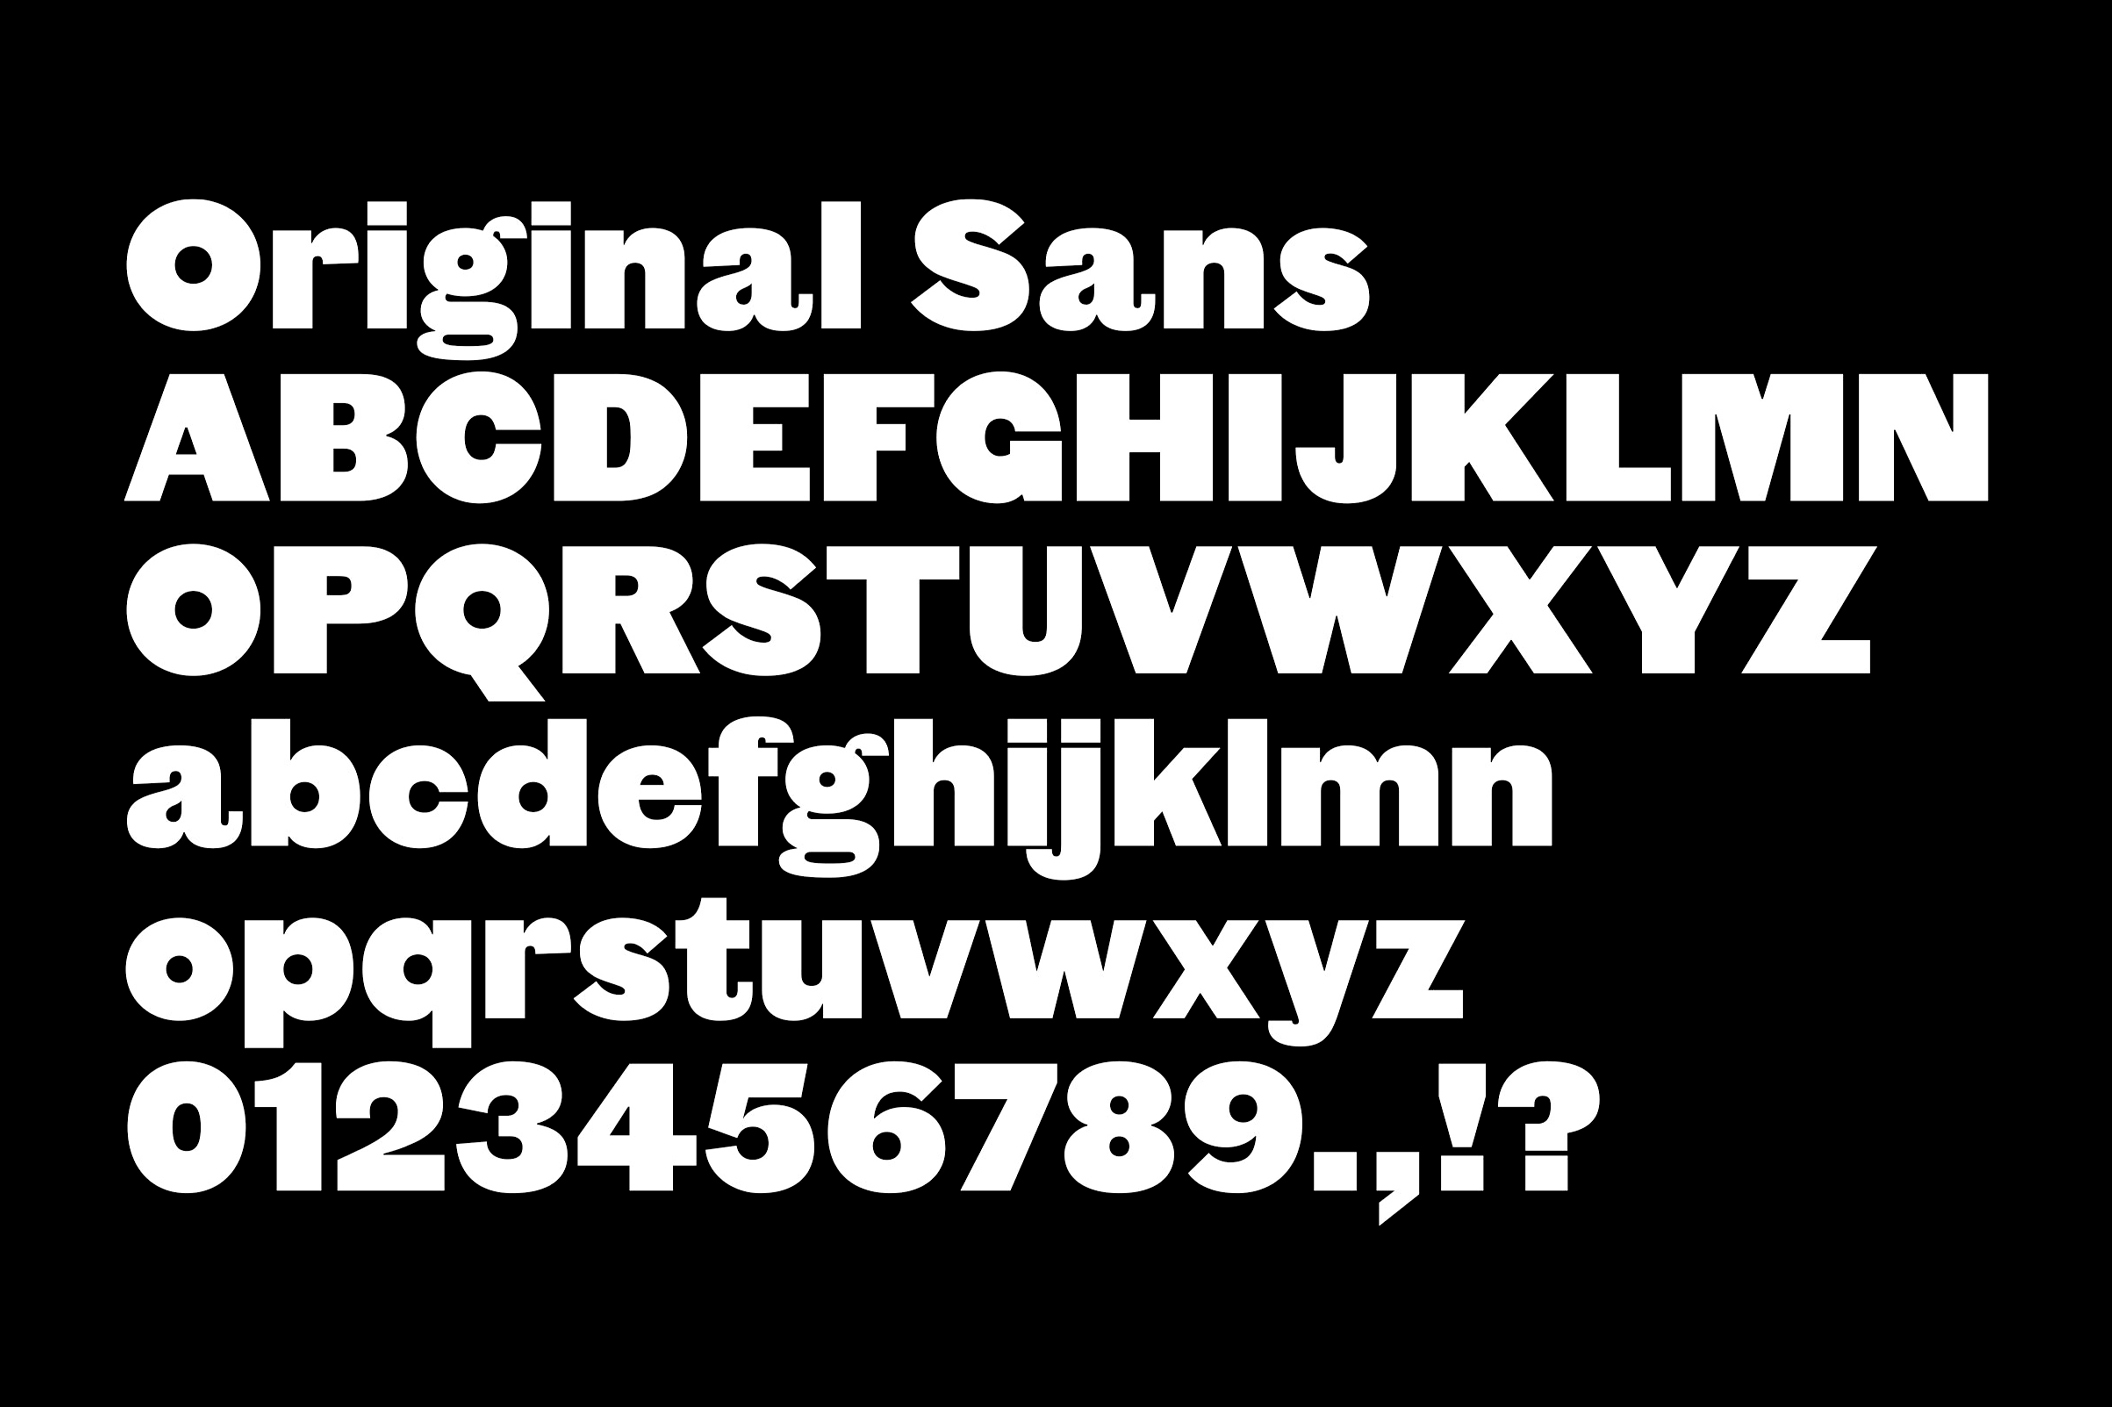 Original Sans, Commercial Type